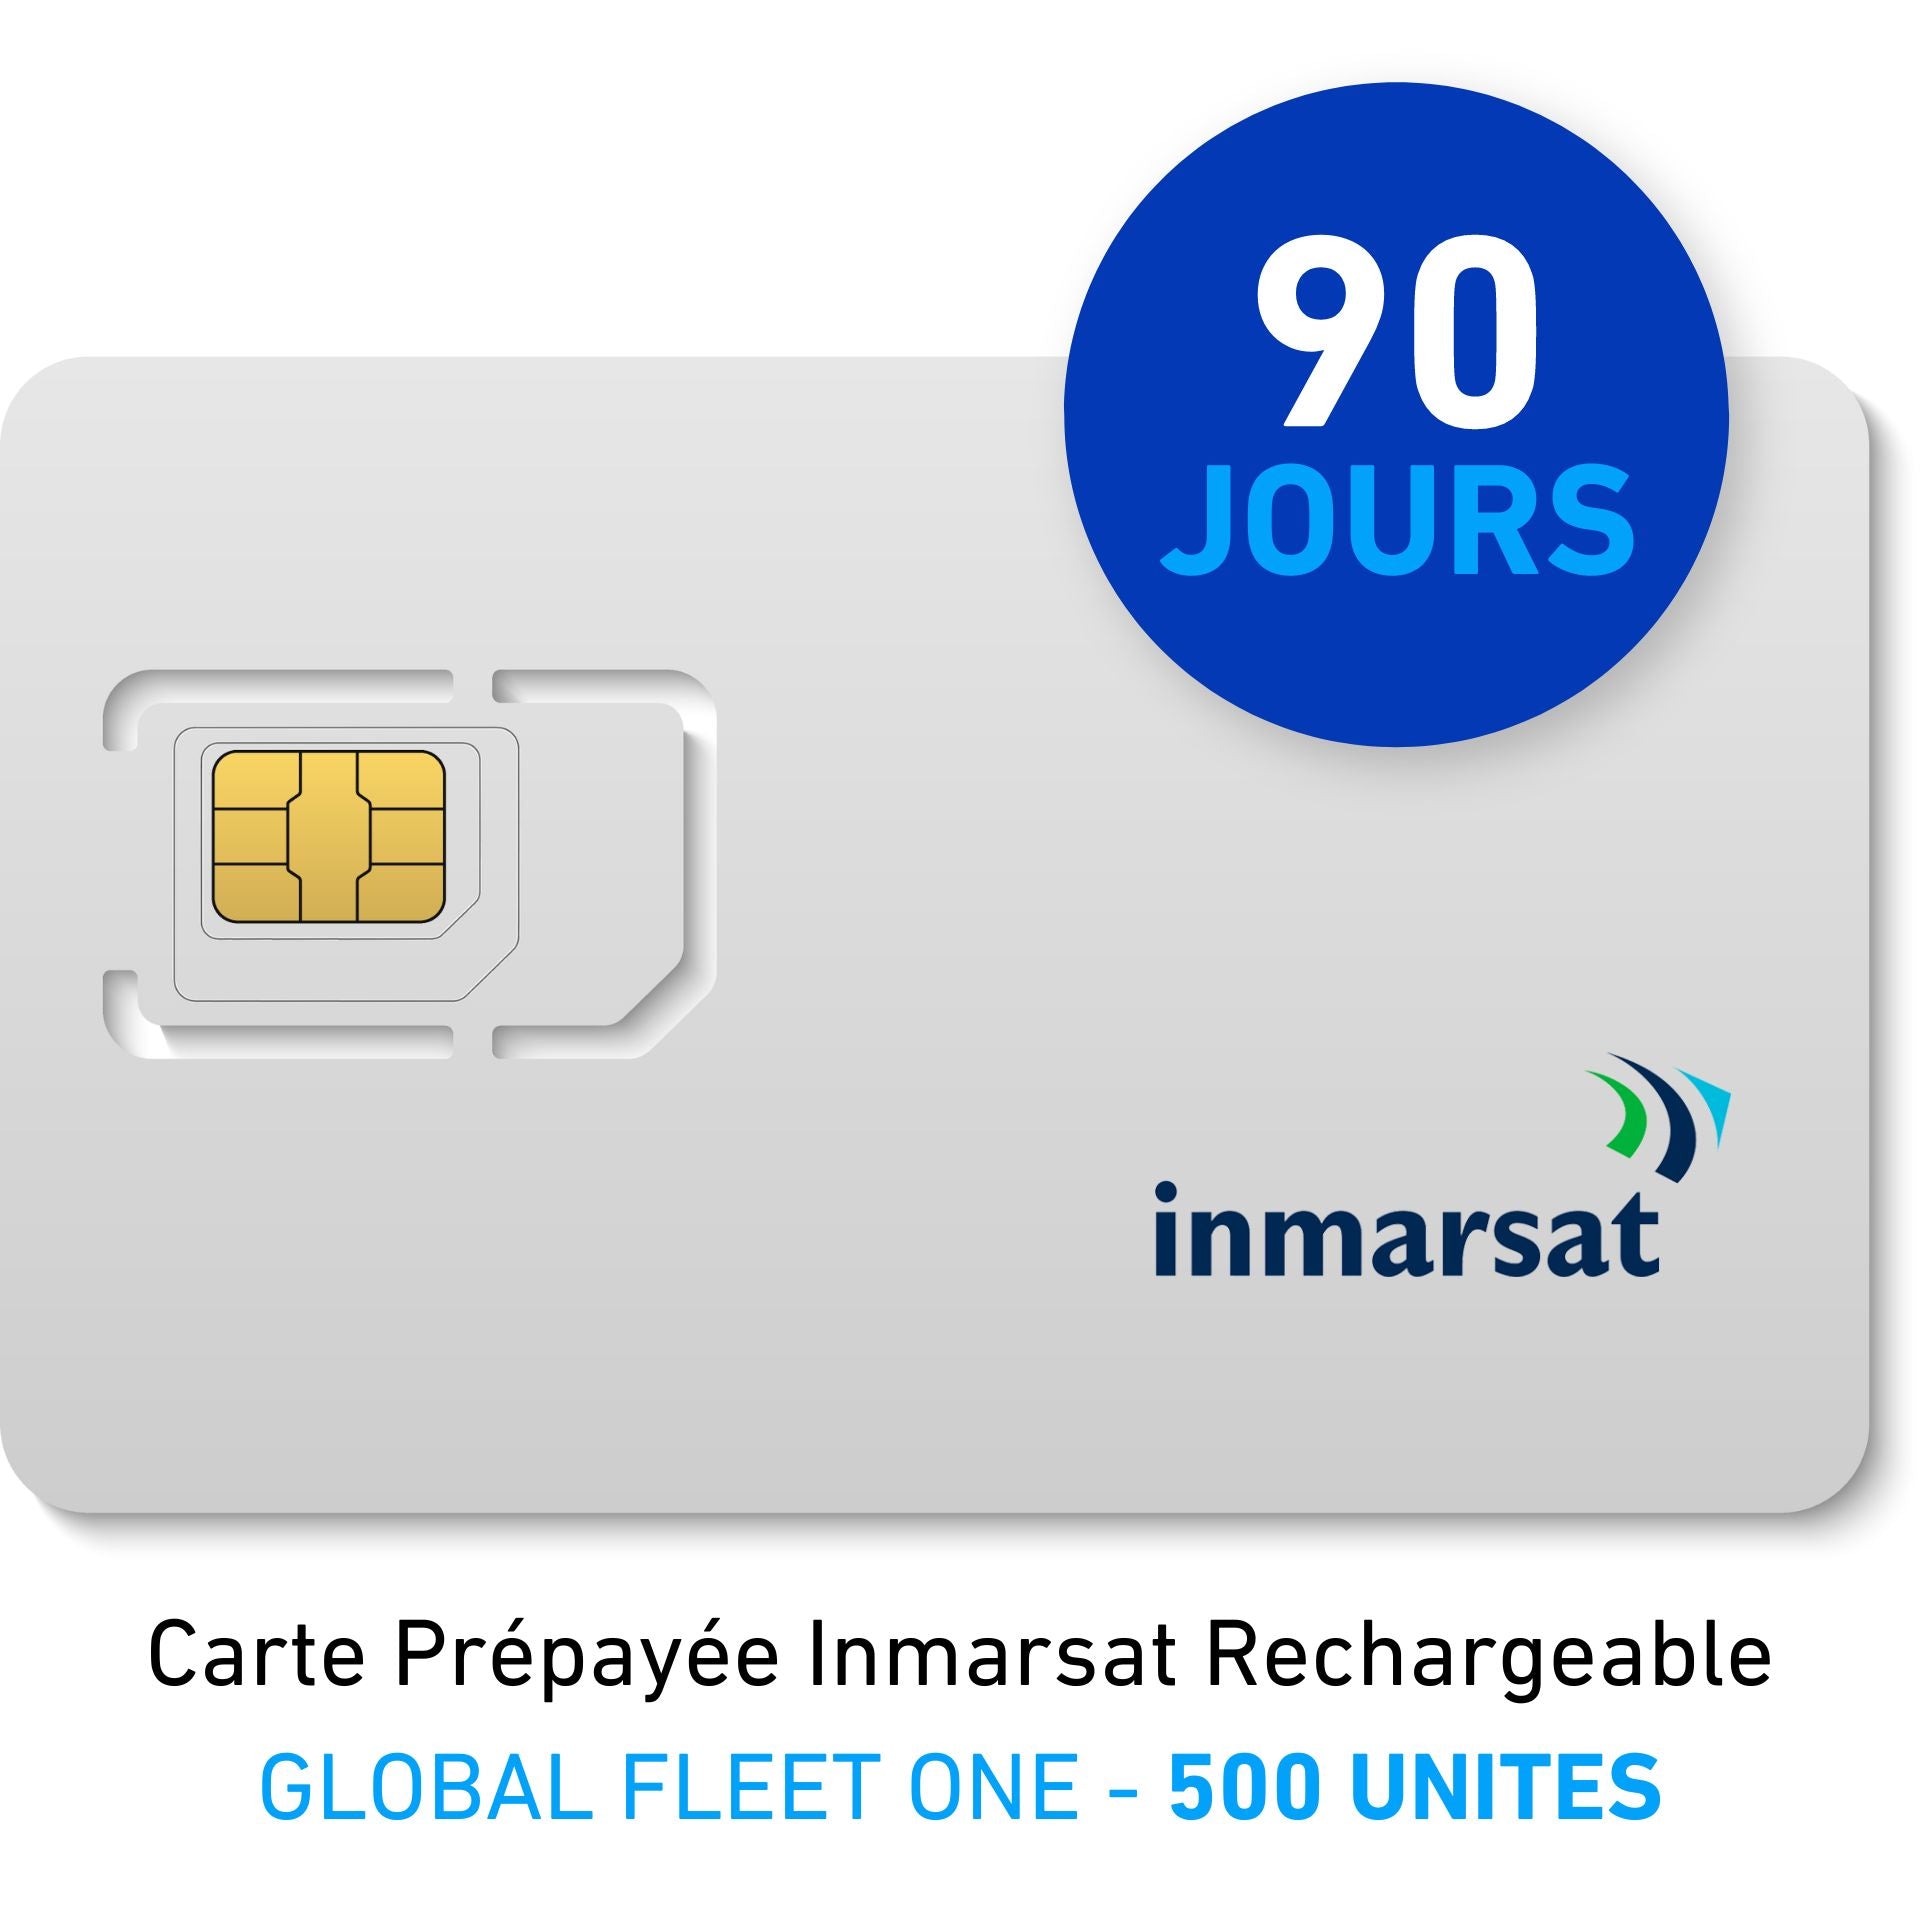 INMARSAT GLOBAL FLEET ONE Prepaid Reloadable Card - 500 UNITS - 90 DAYS